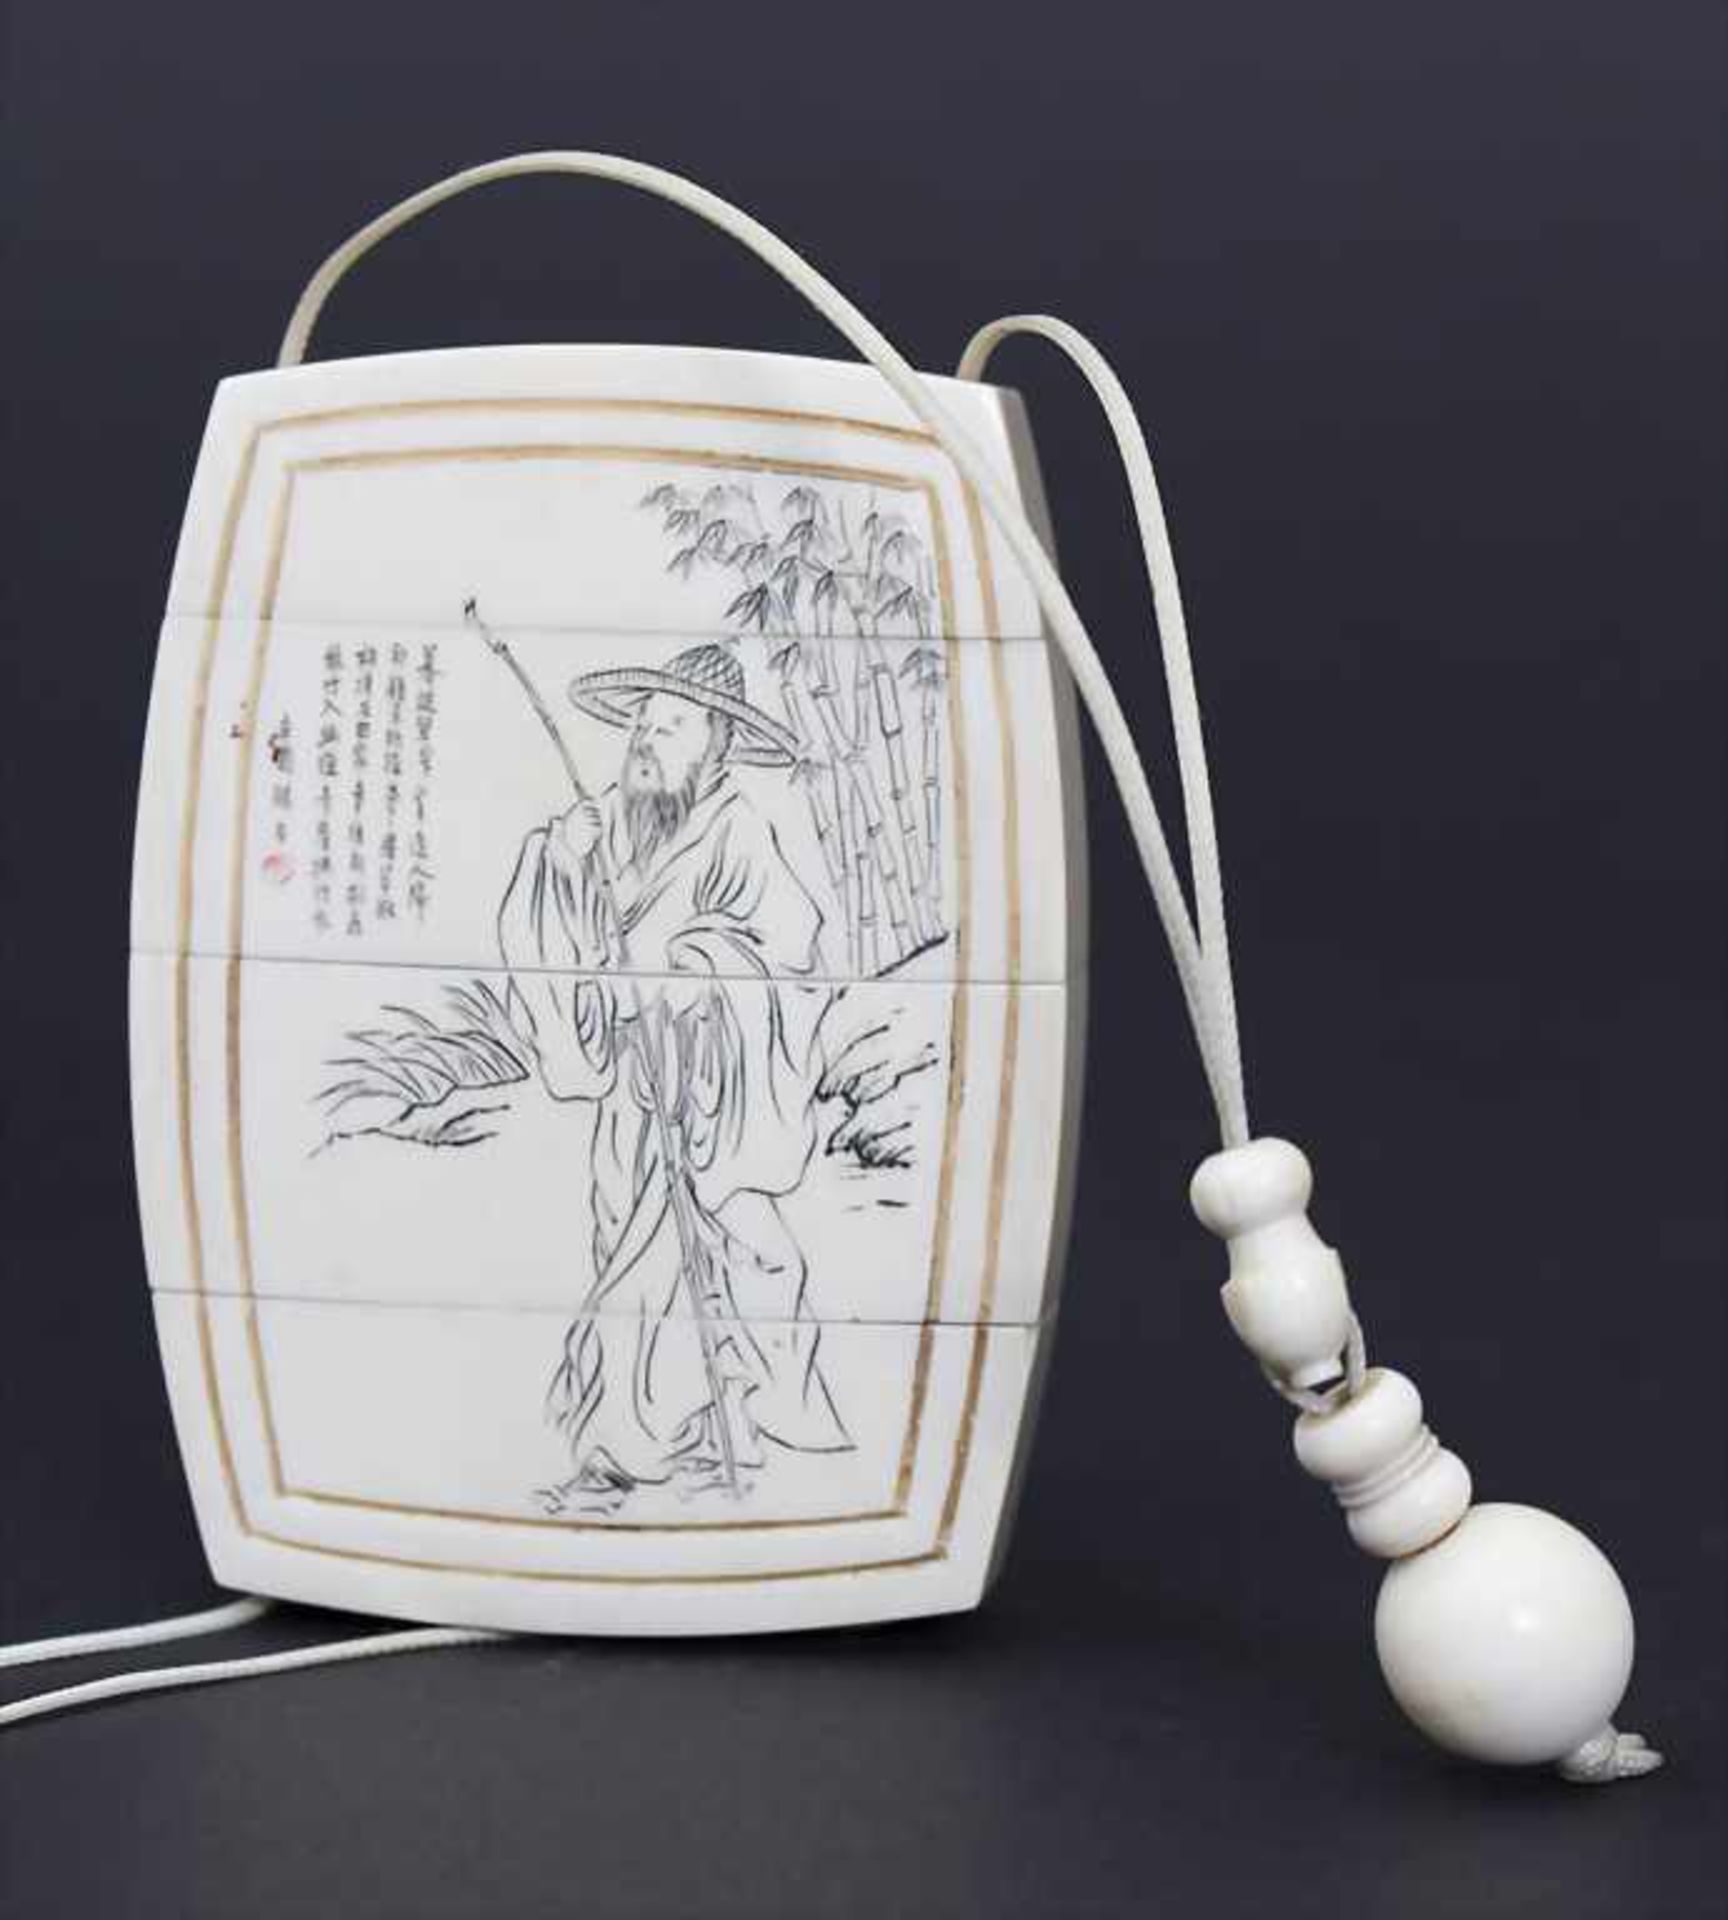 Inro / An Inro, Japan, um 1900Material: Elfenbein, geschnitzt, verziert mit graviertem Kaligrafisten